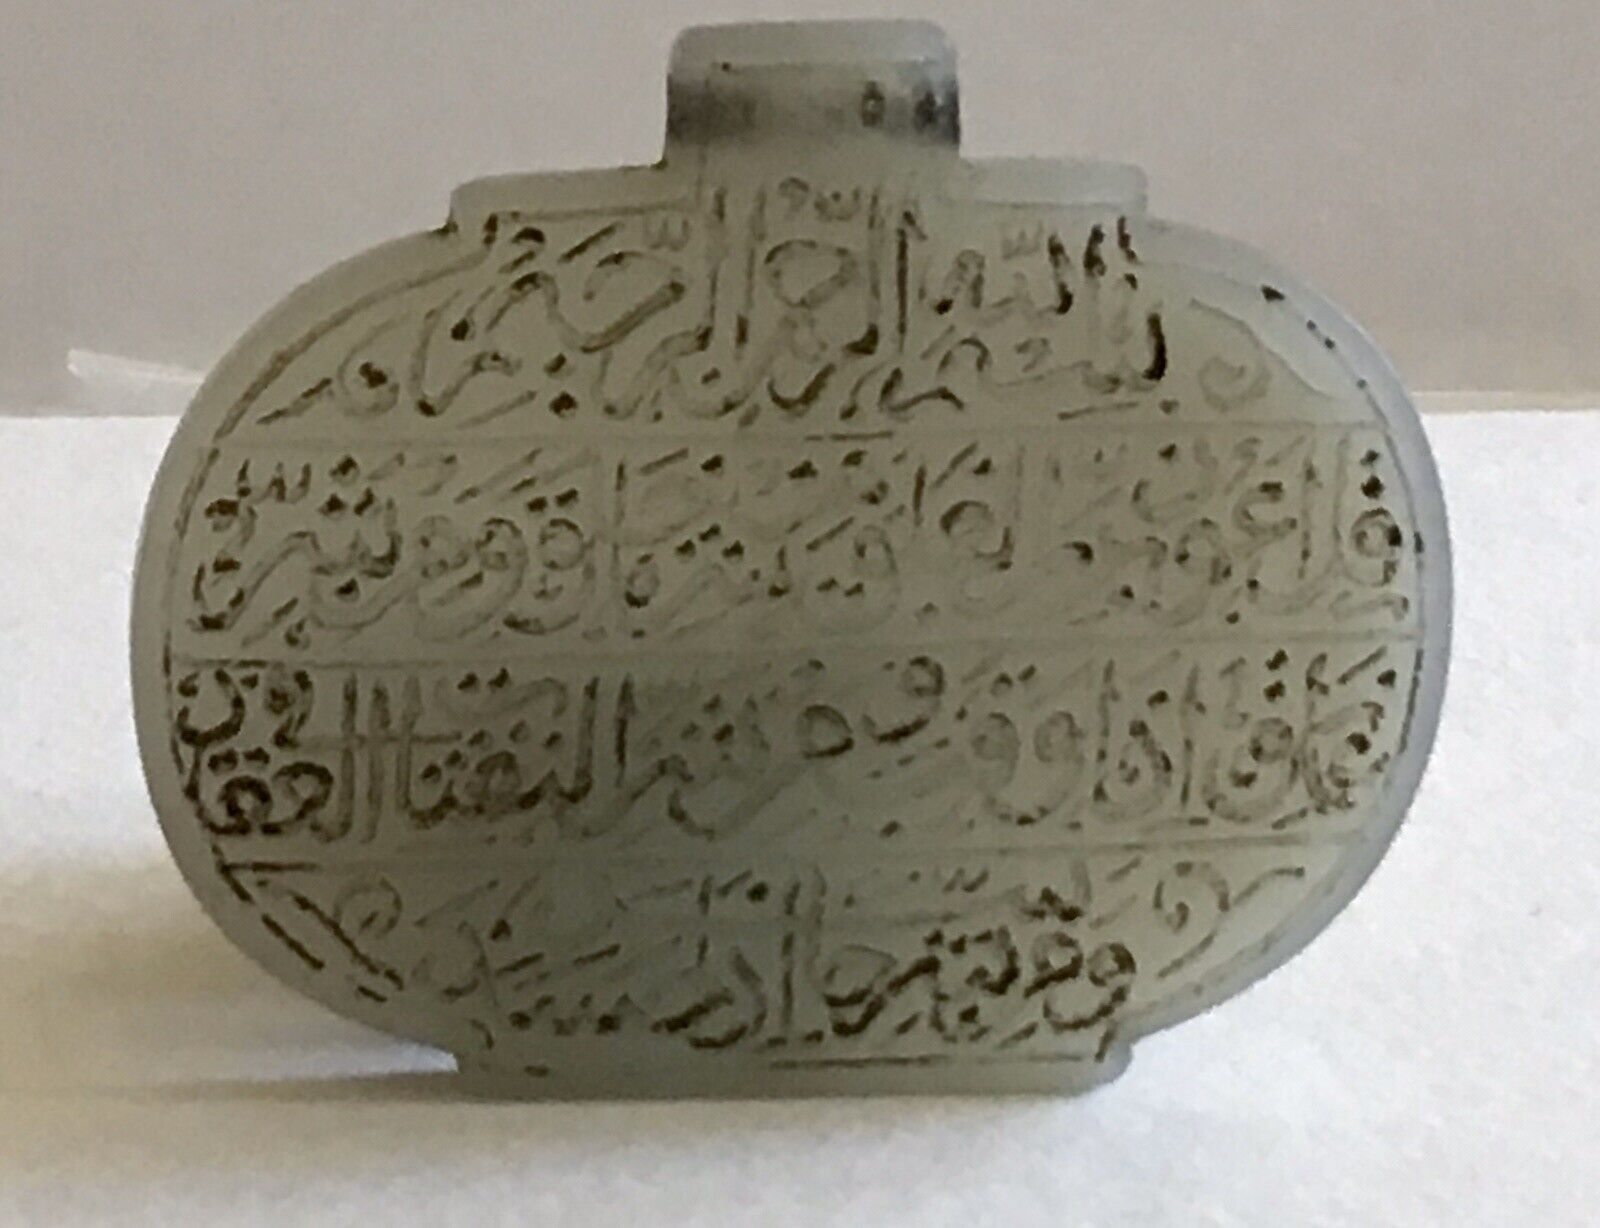 Scarce large White Agate Oval Pendant With Inscription In Arabic,Nastaliq Script